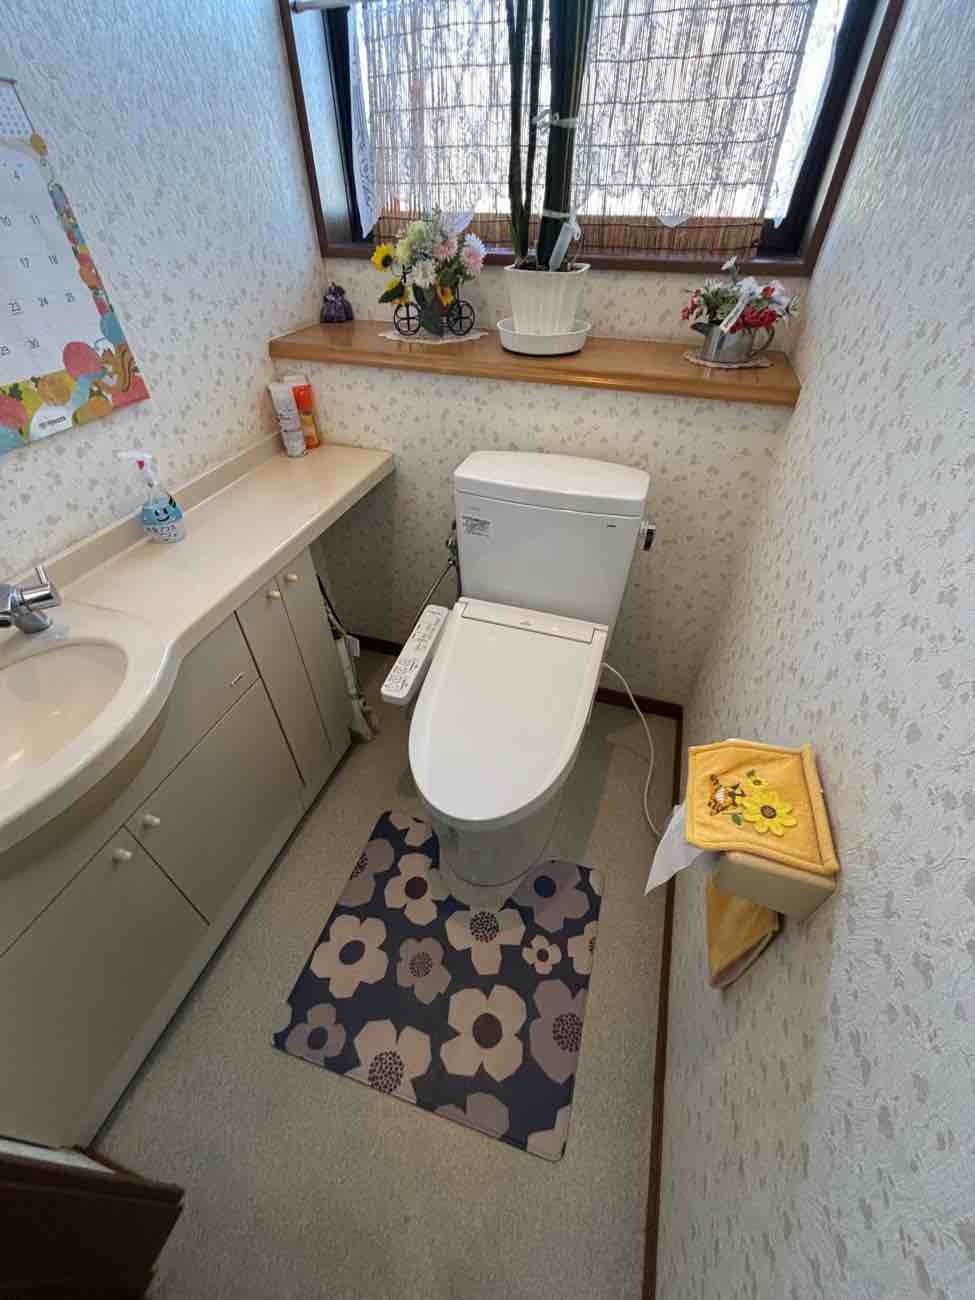 【埼玉県三郷市】A様邸トイレ交換工事が完了しました。TOTO ピュアレストQR 画像